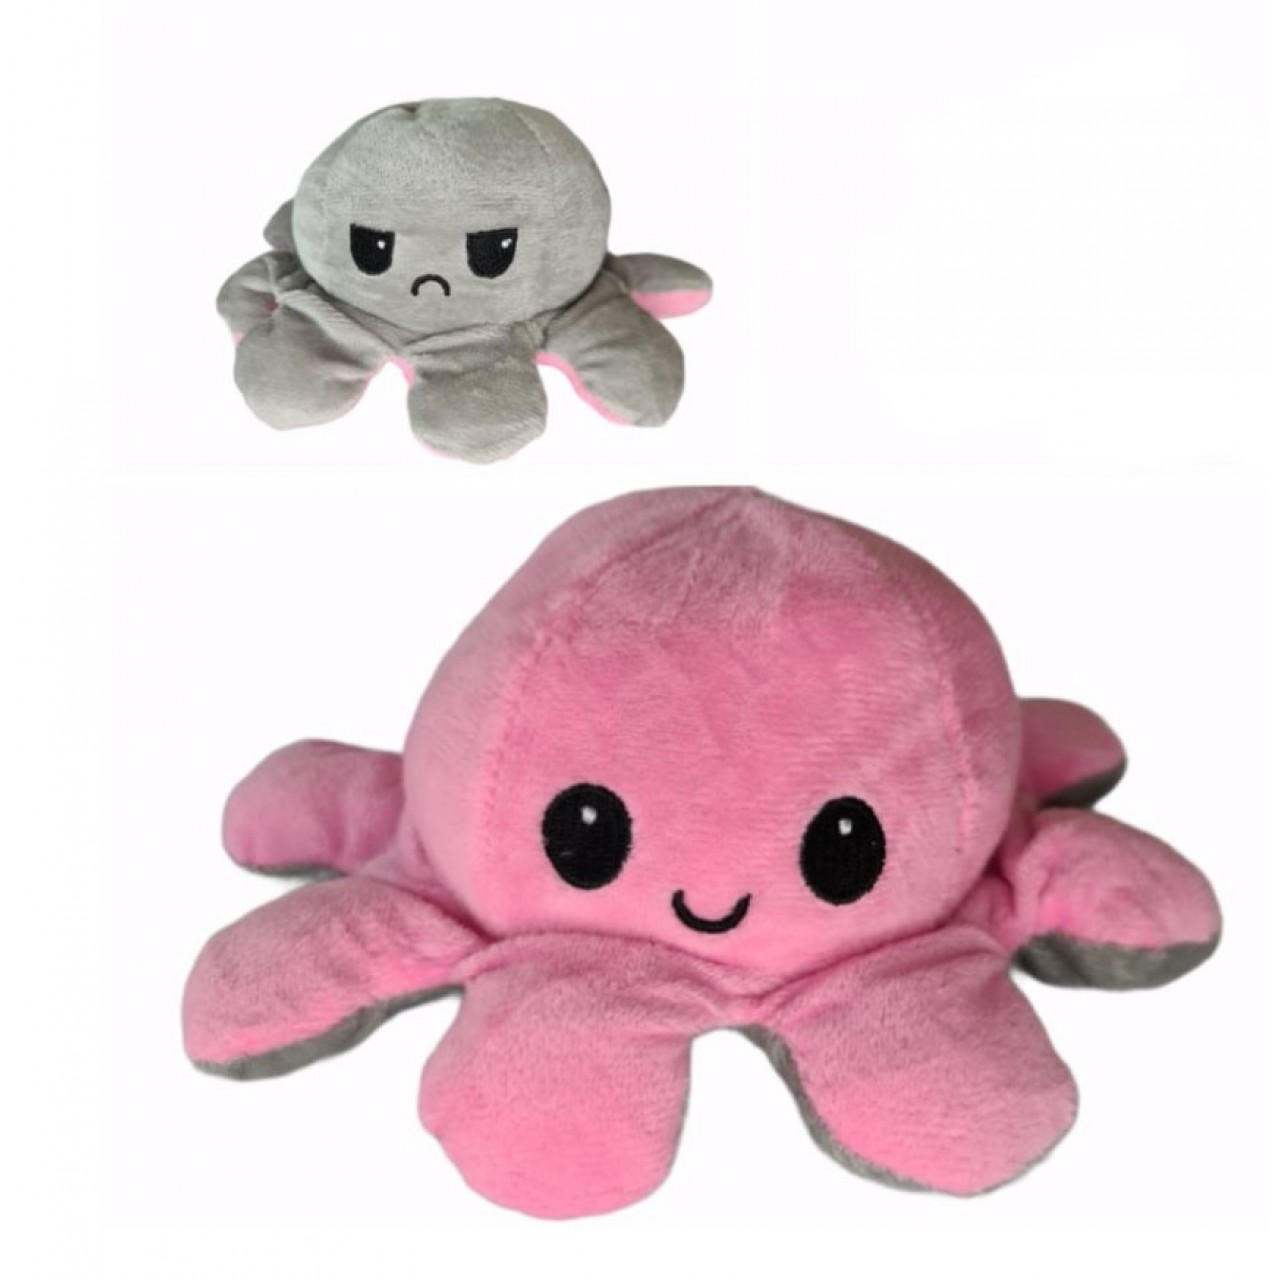 Χταπόδι διπλής όψης λούτρινο emotional reversible octopus plush 12 εκ - 5260 - Γκρι / Ανοιχτό ροζ